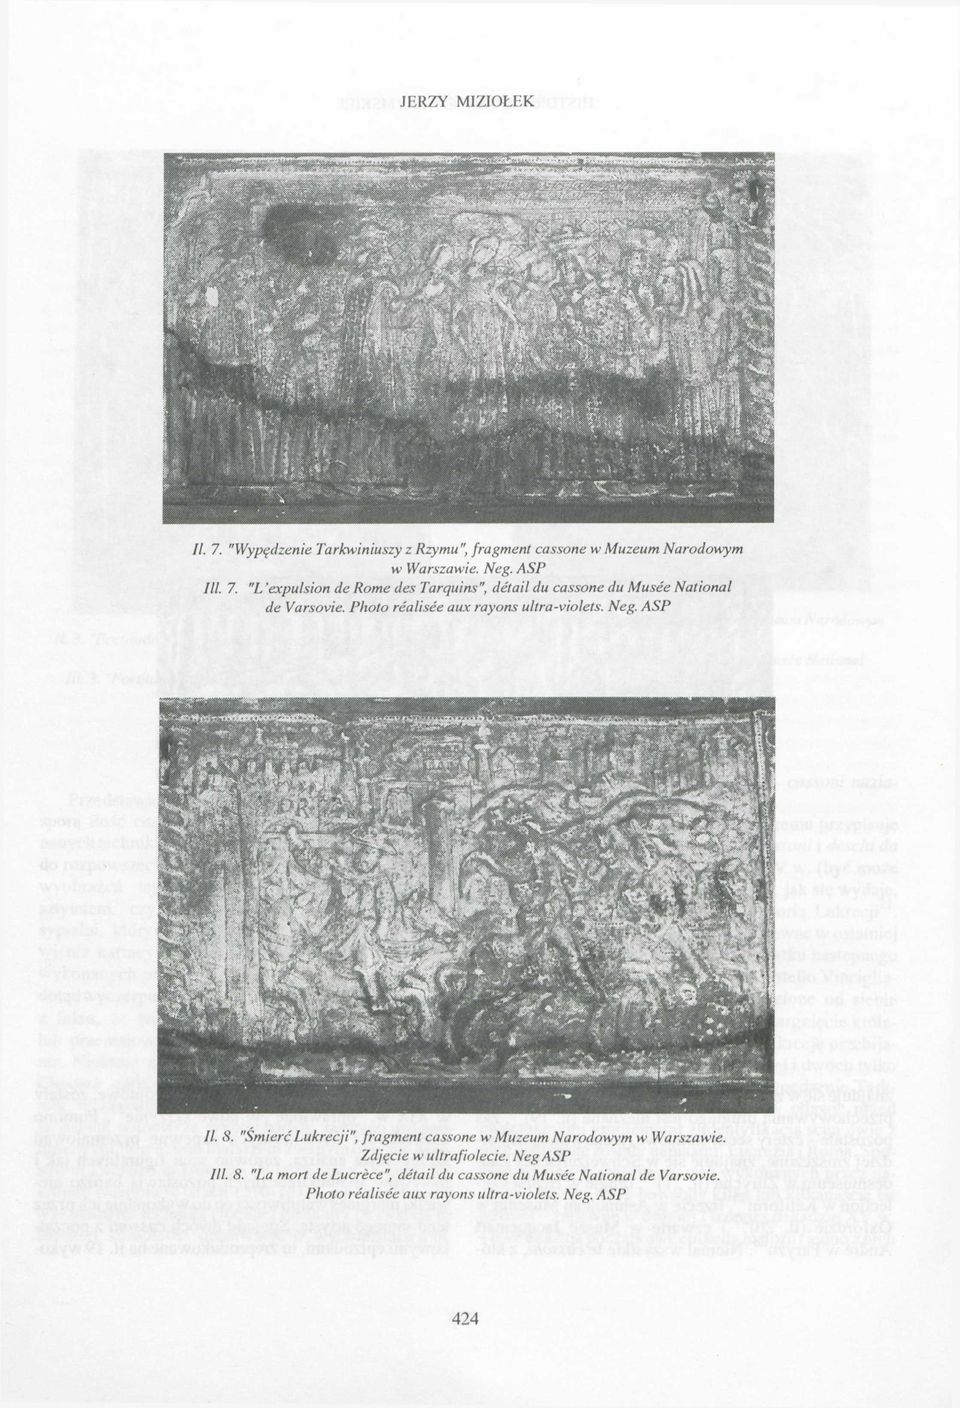 "Śmierć Lukrecji", fragment cassone w Muzeum Narodowym w Warszawie. Zdjęcie w ultrafiolecie. Neg ASP III. 8.